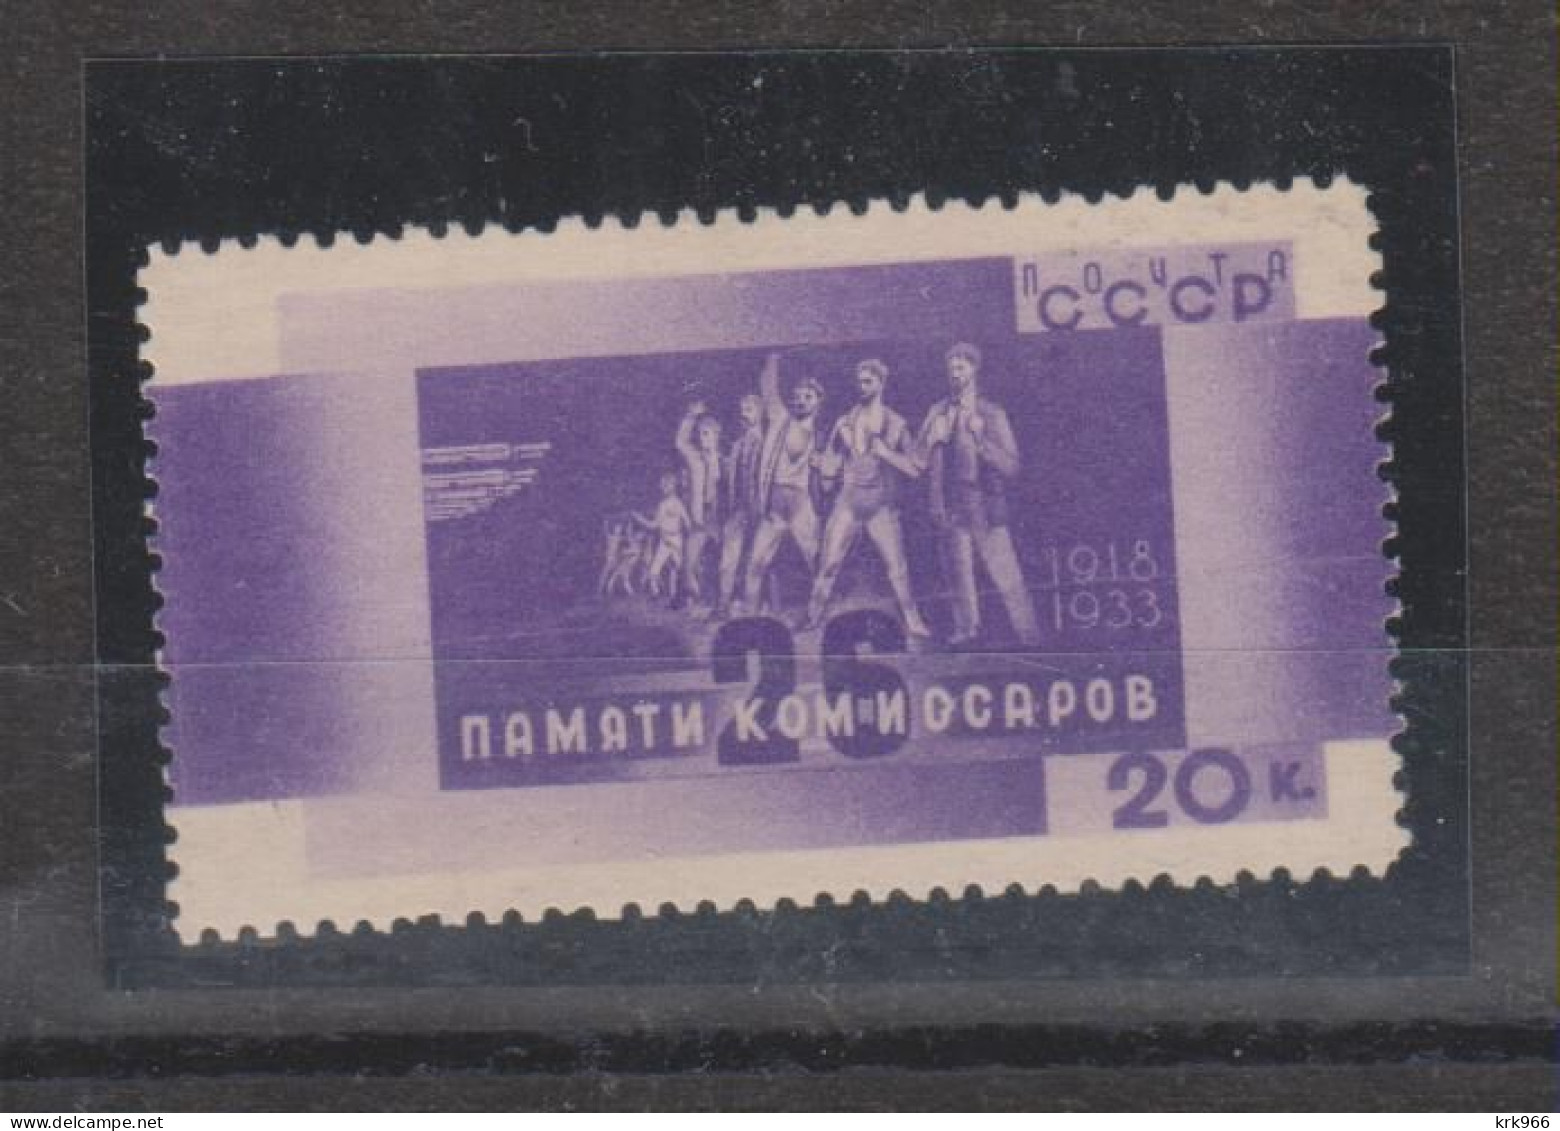 RUSSIA 1933 20 K Nice Stamp   MNH - Nuovi